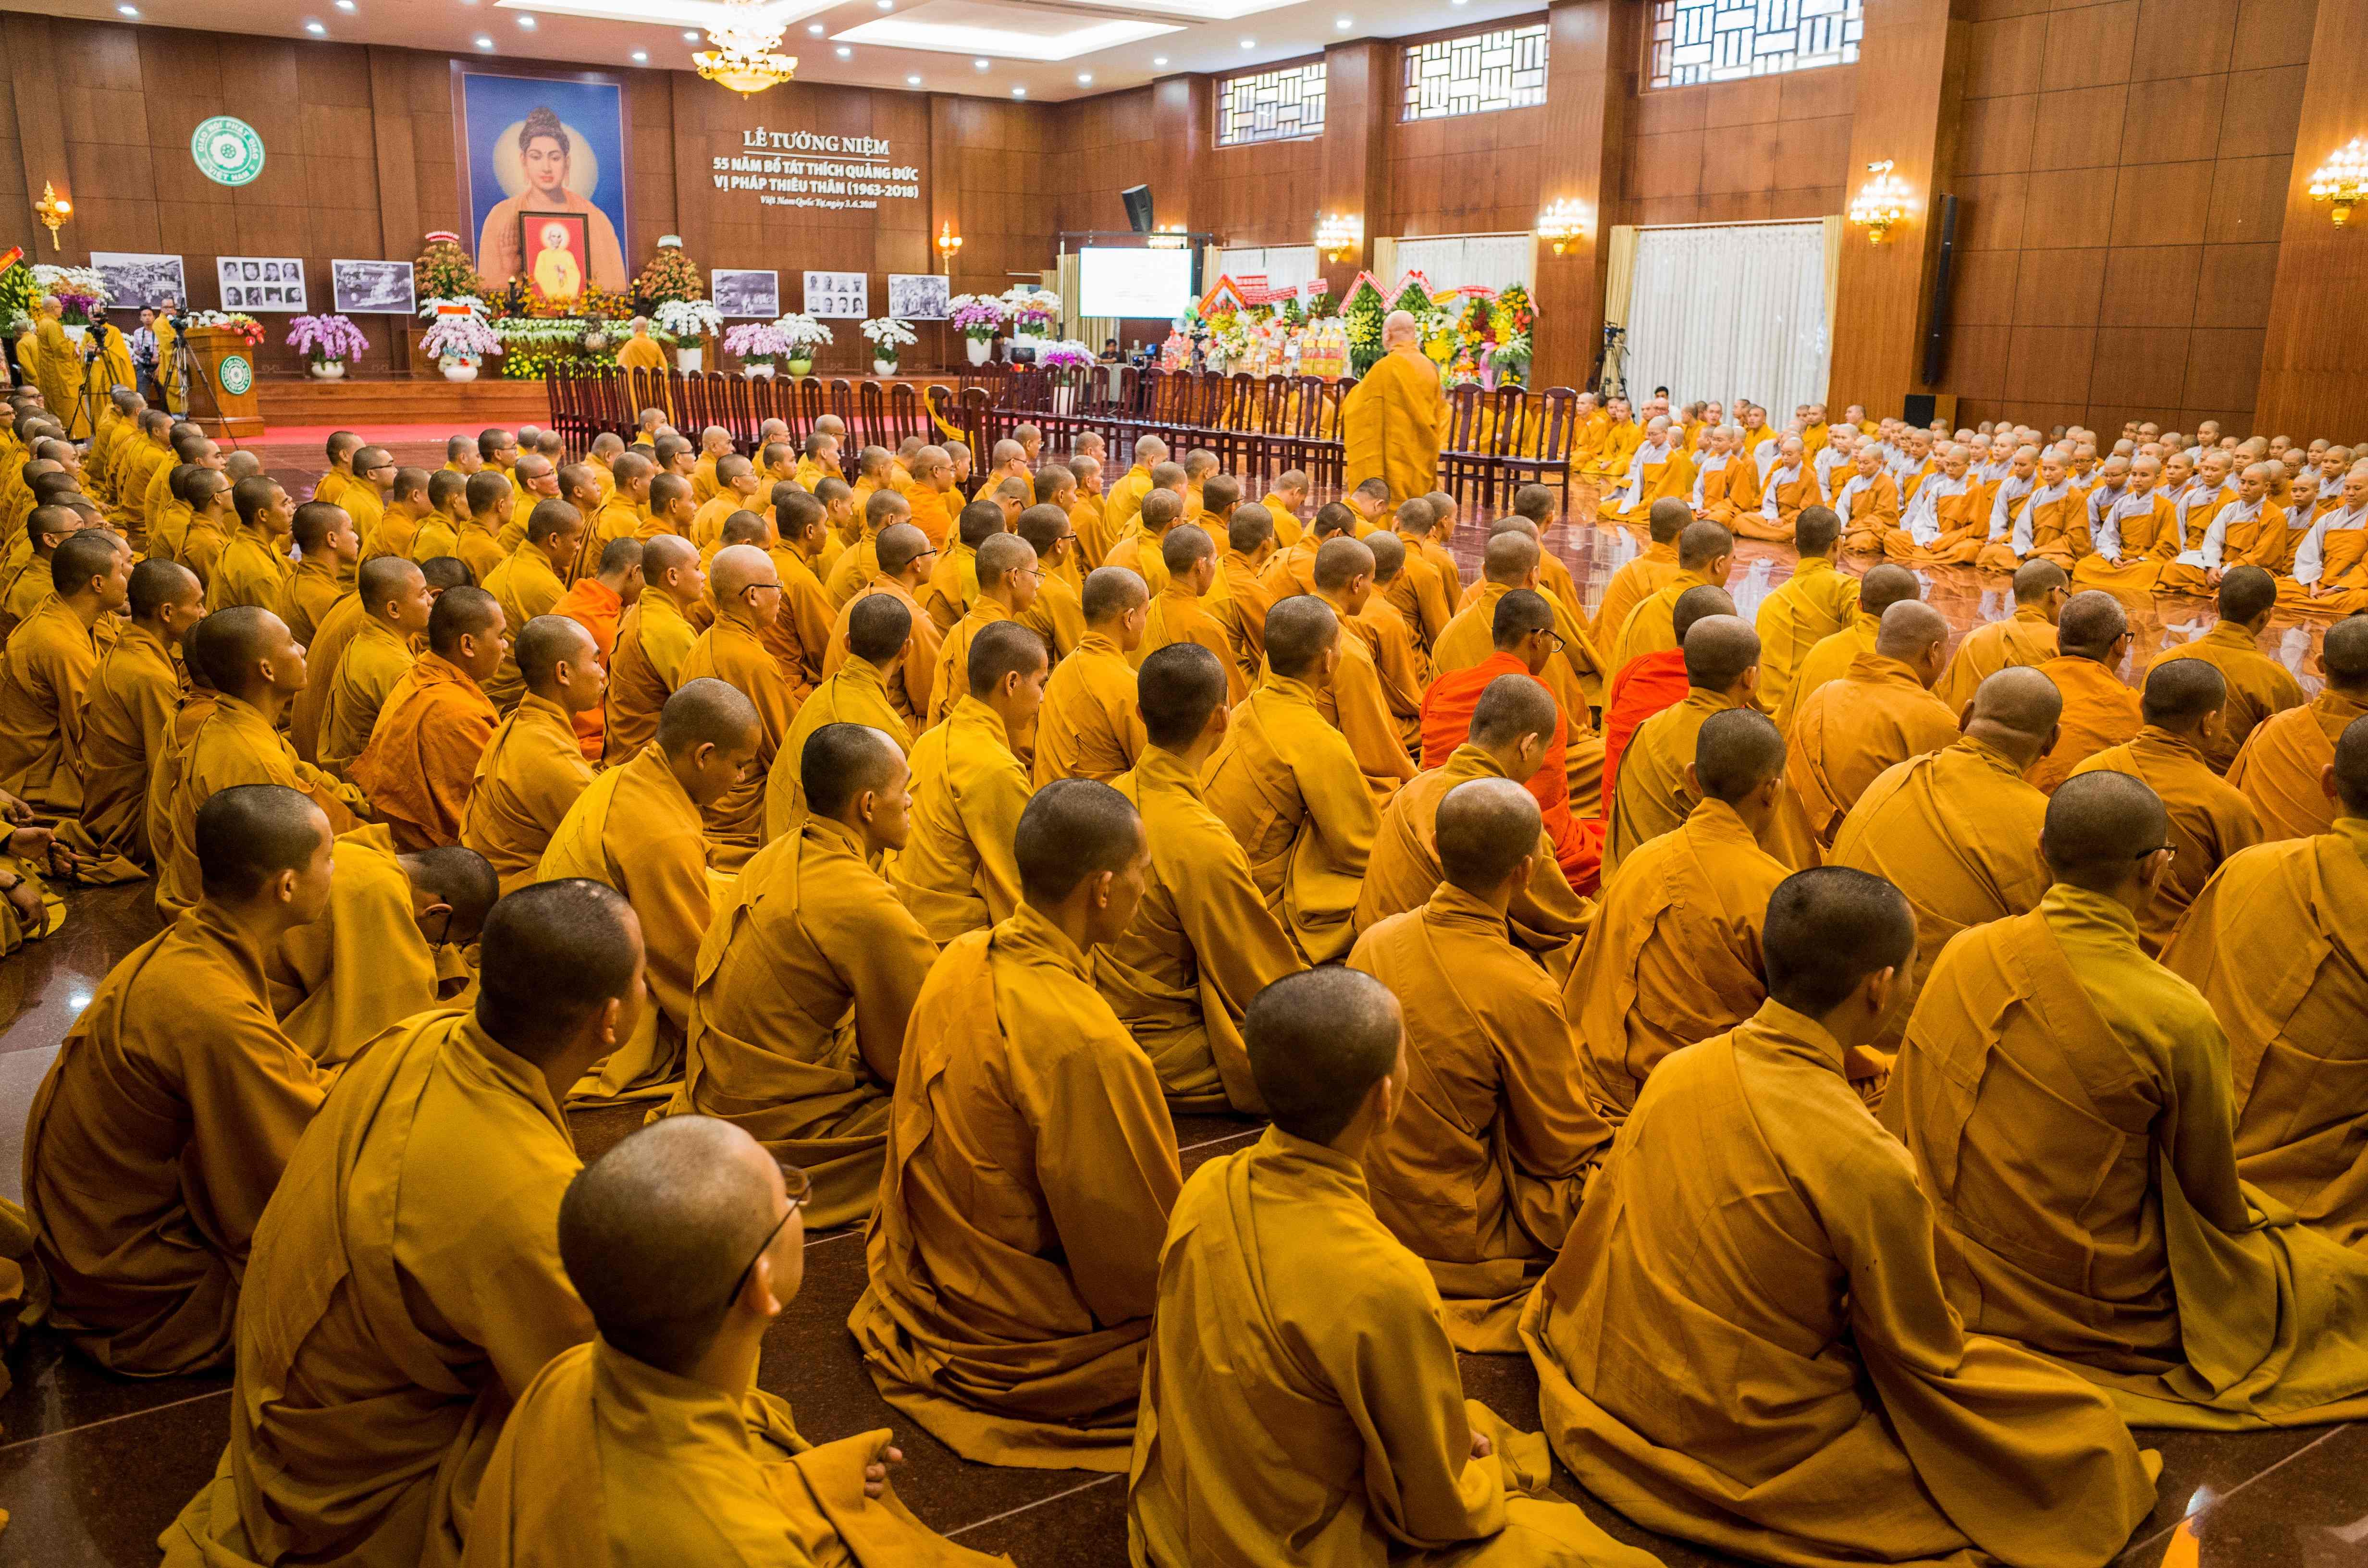 بوذيون يحيون الذكرى الـ55 للراهب ثيش كوانج دوك فى فيتنام